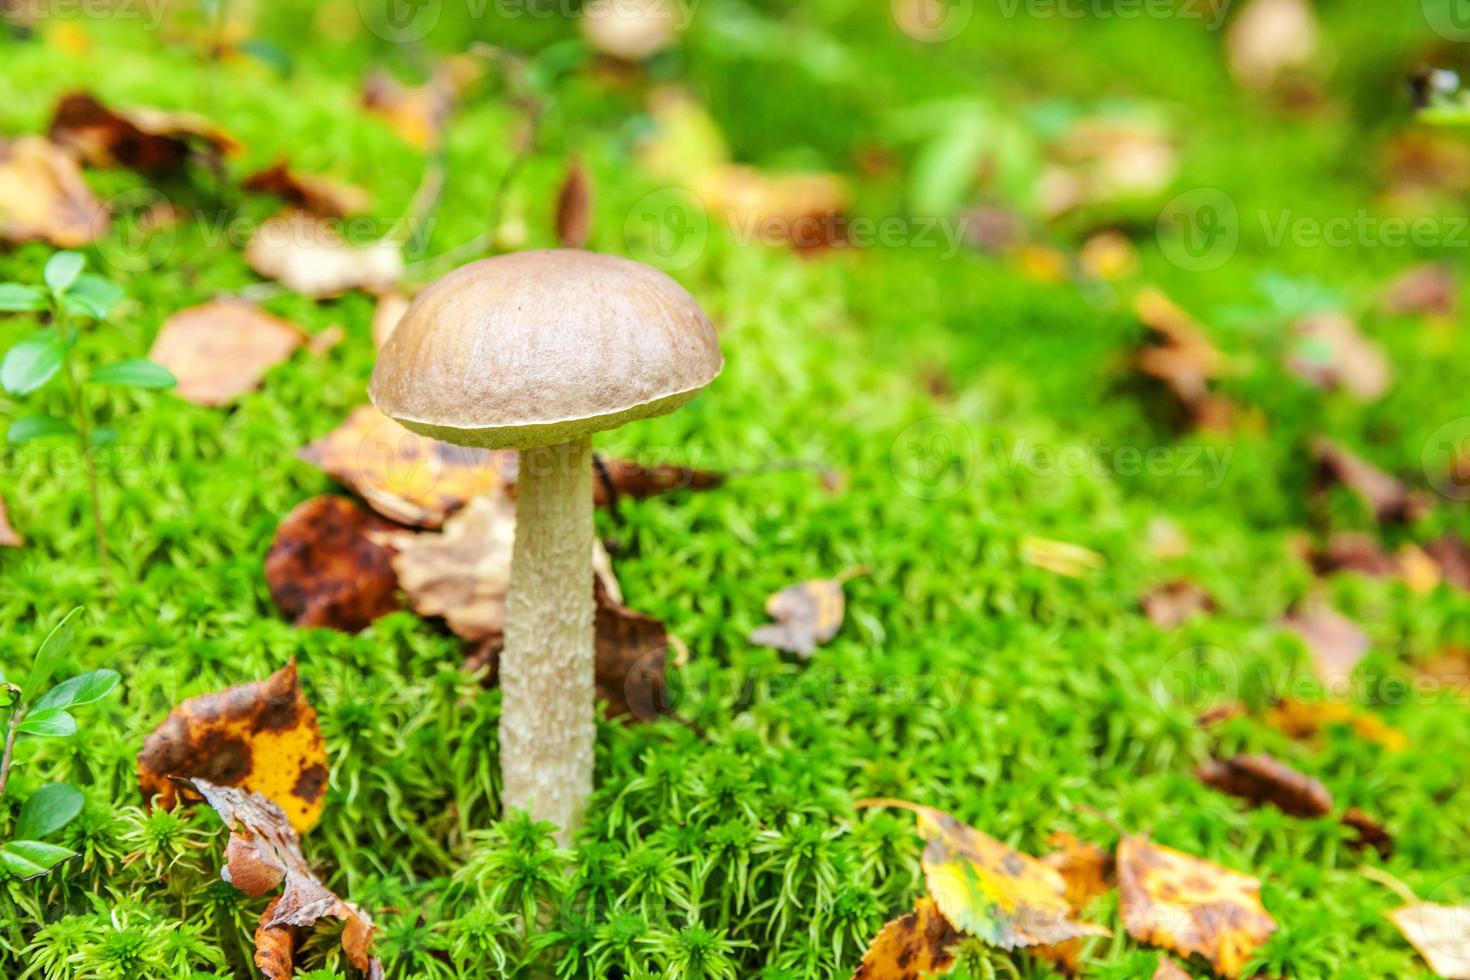 cogumelo pequeno comestível com touca marrom penny bun leccinum em fundo de floresta de outono de musgo. fungos no ambiente natural. macro de cogumelo grande close-up. paisagem natural inspiradora de verão ou outono foto